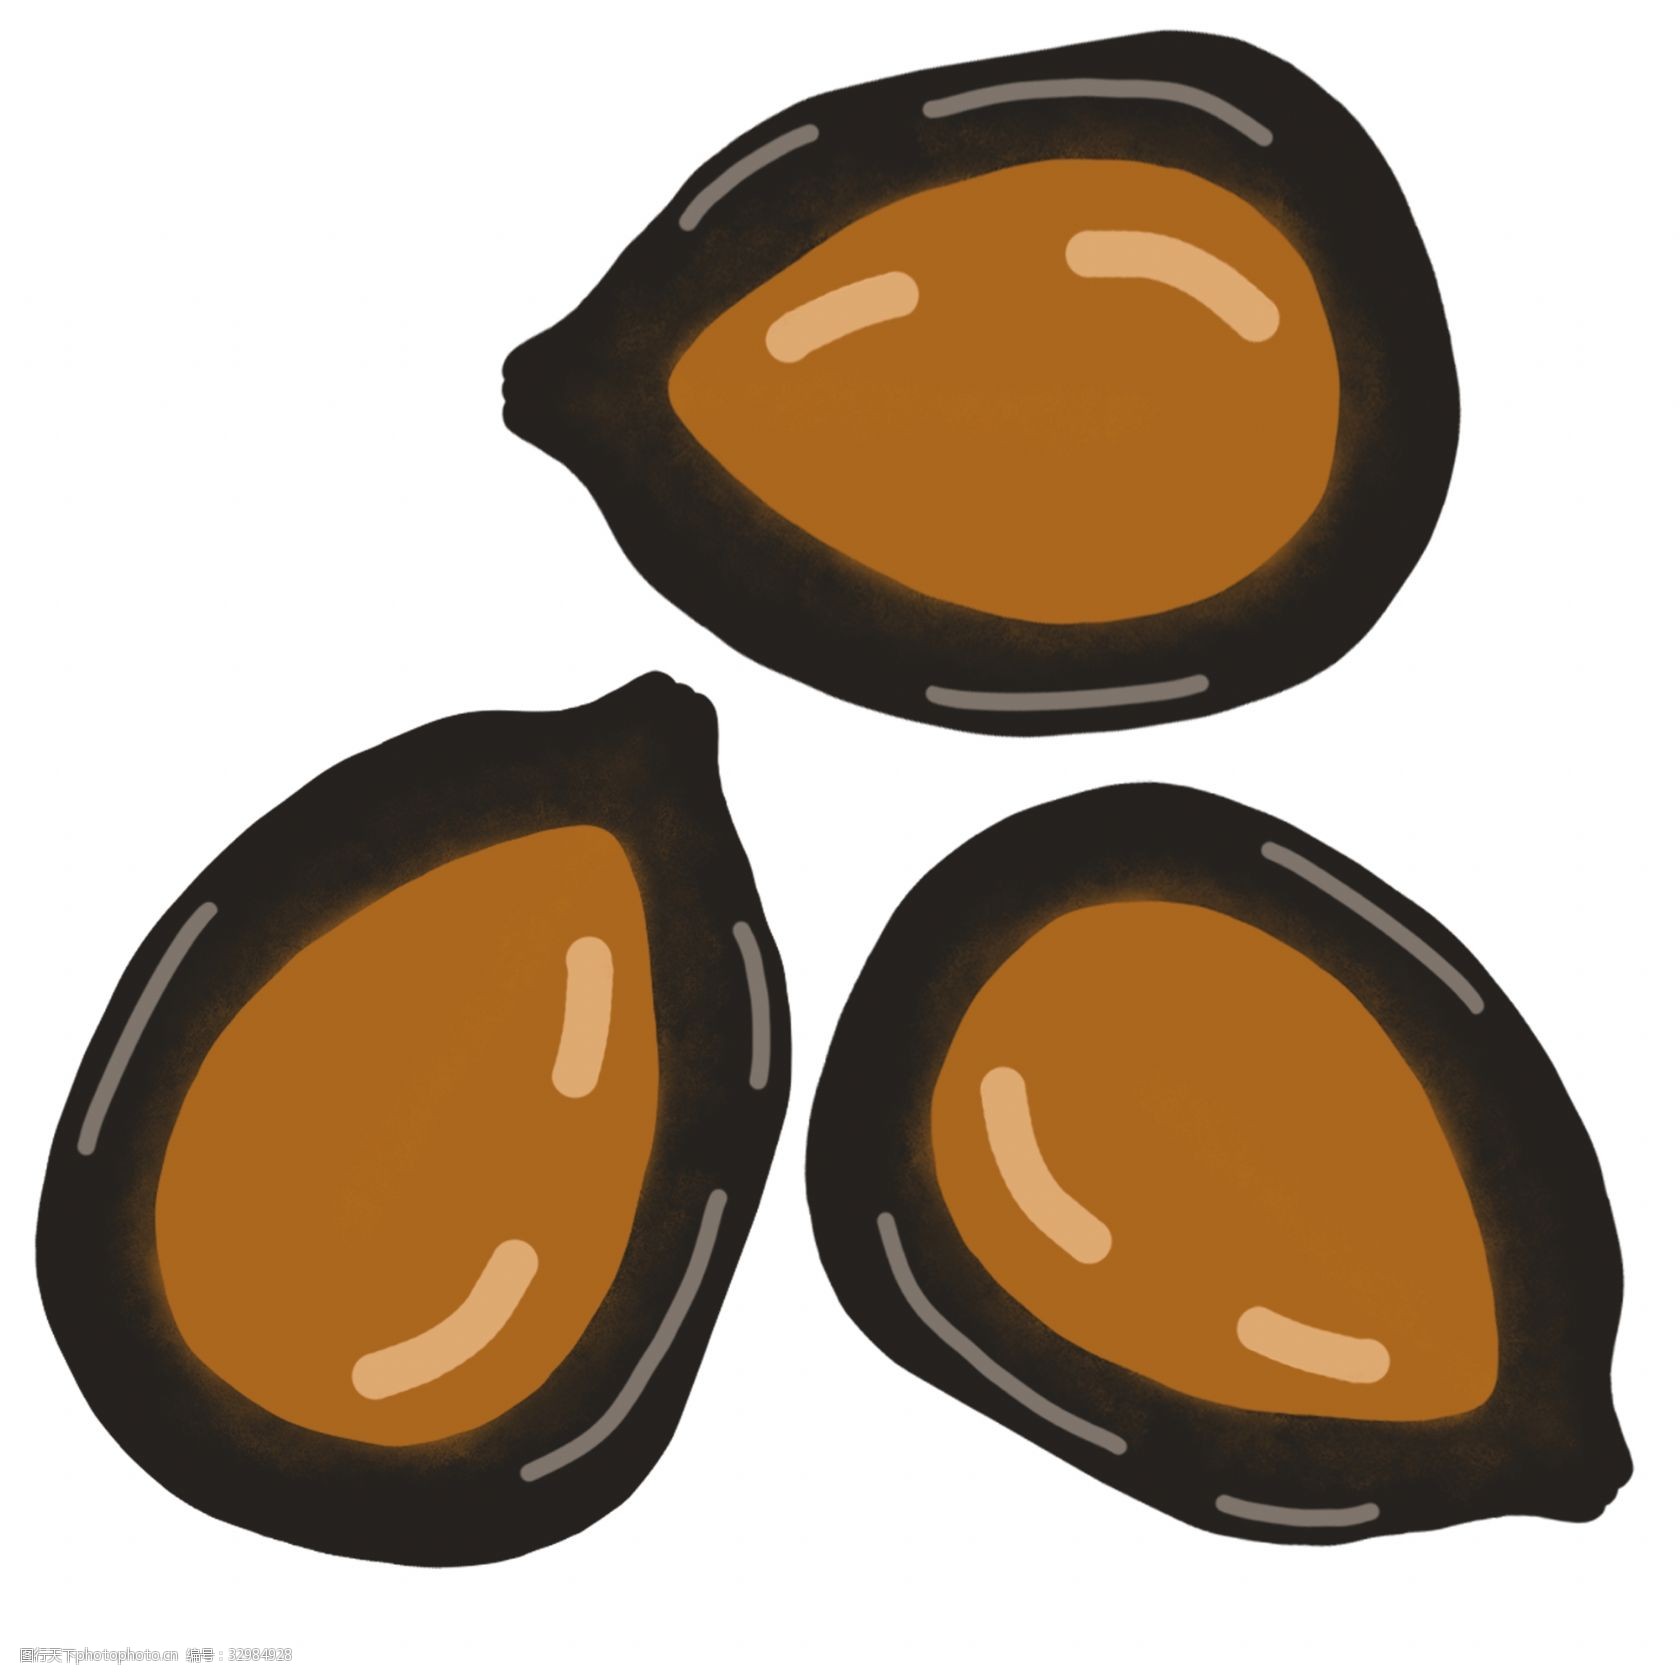 关键词:坚果黑瓜子的插画 黑瓜子坚果 卡通插画 坚果插画 零食坚果